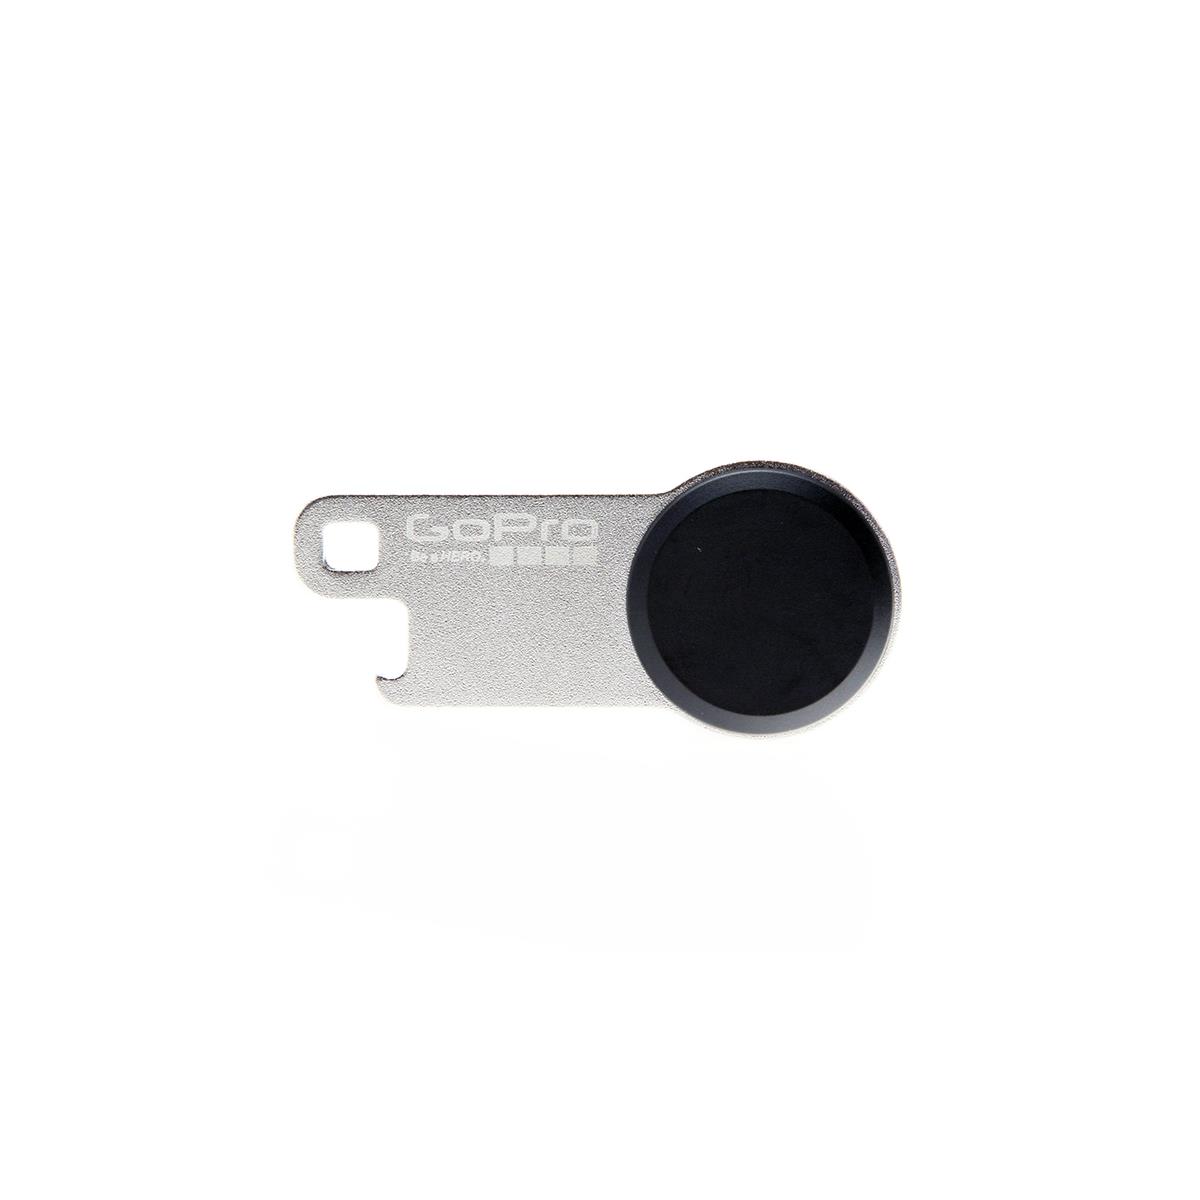 GoPro The Tool, гаечный ключ с накатанной головкой и инструмент для открывания бутылок #ATSWR-301